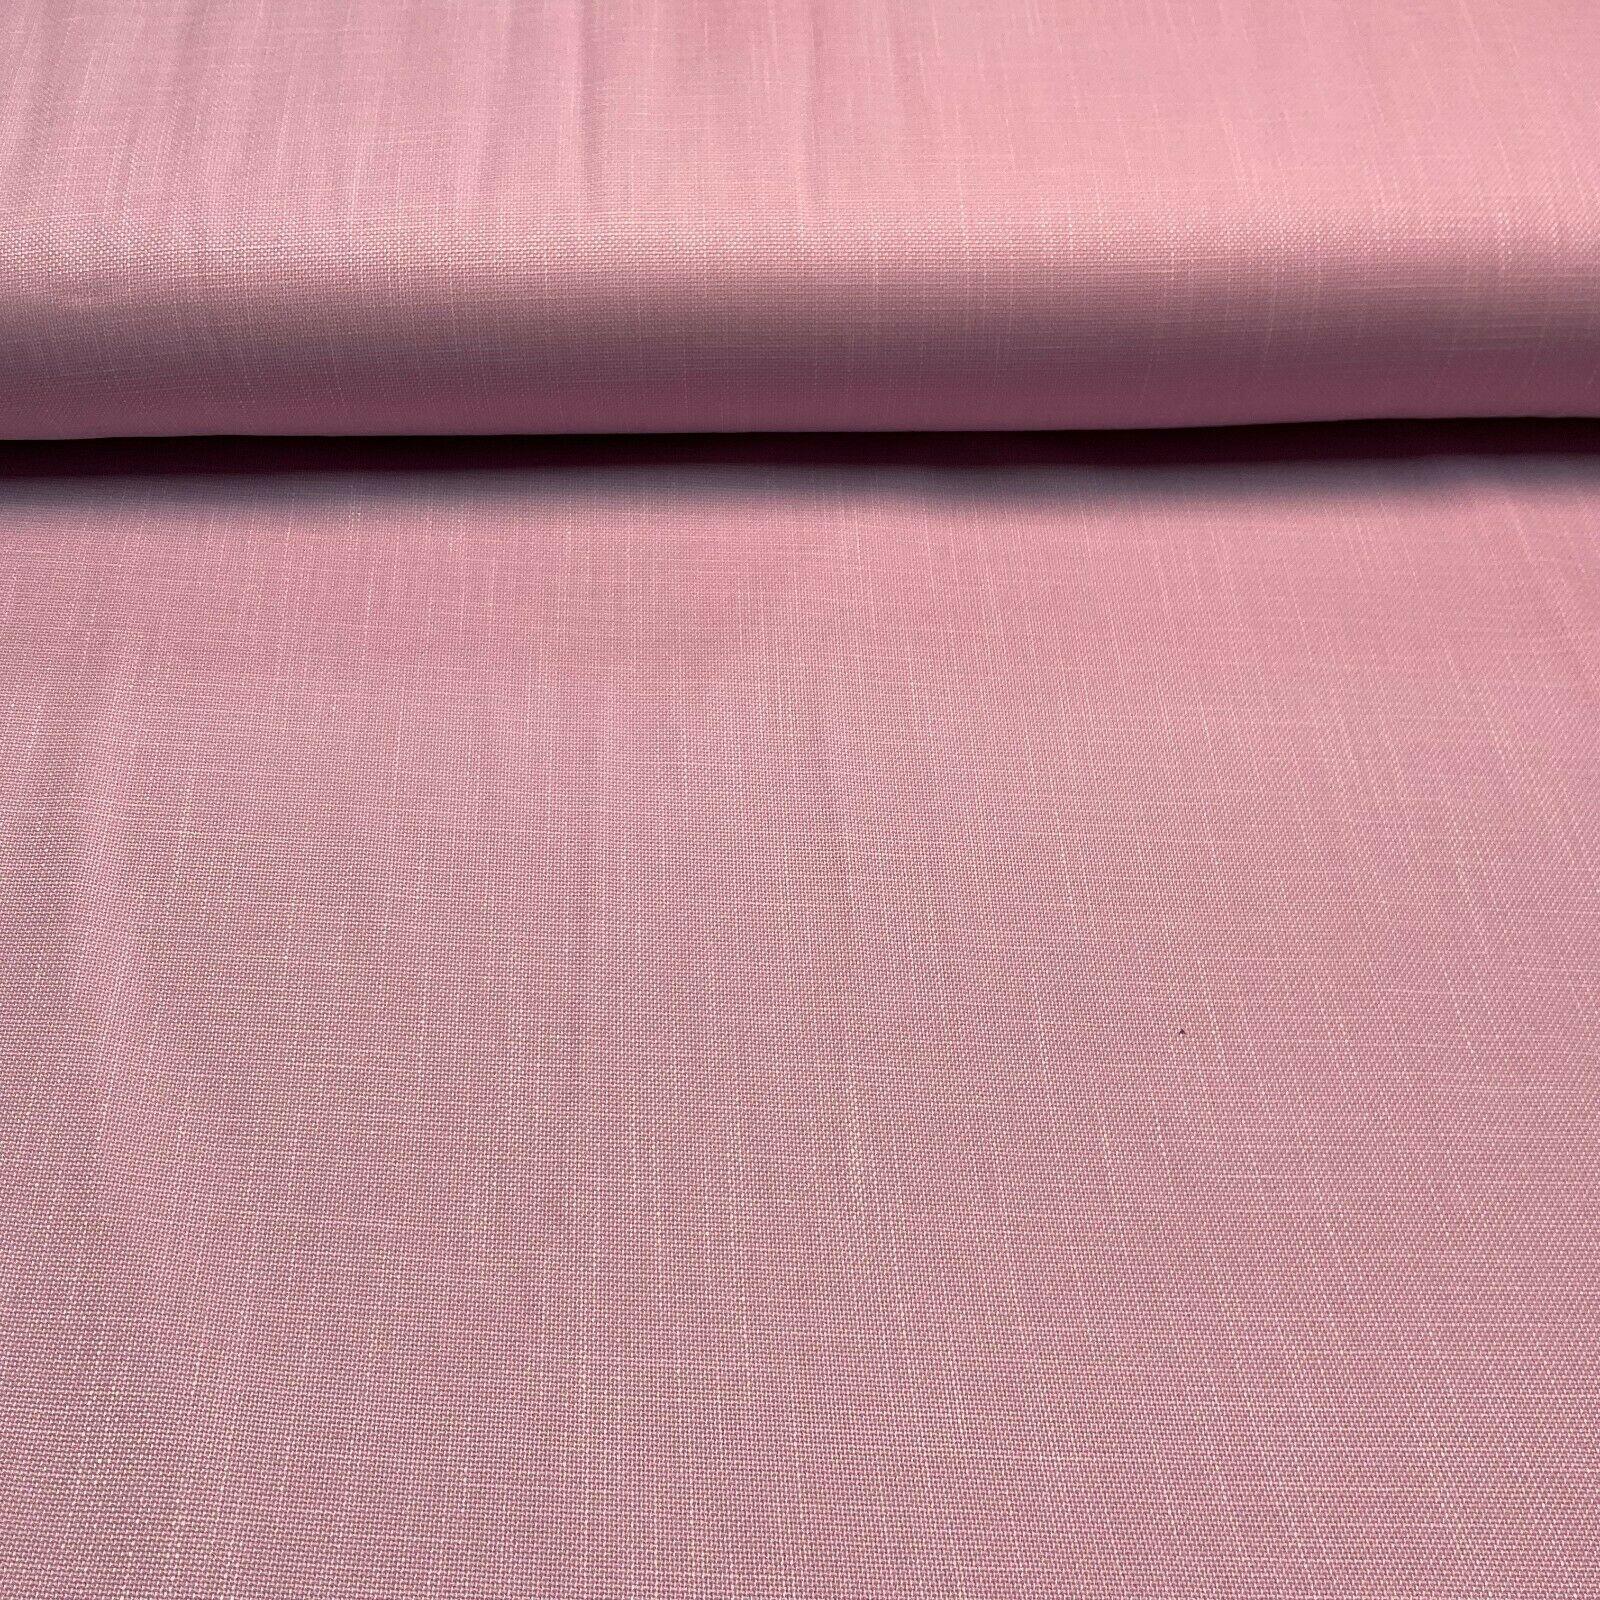 Plain Suiting Linen Effect dress Fabric 147cm wide  M1584